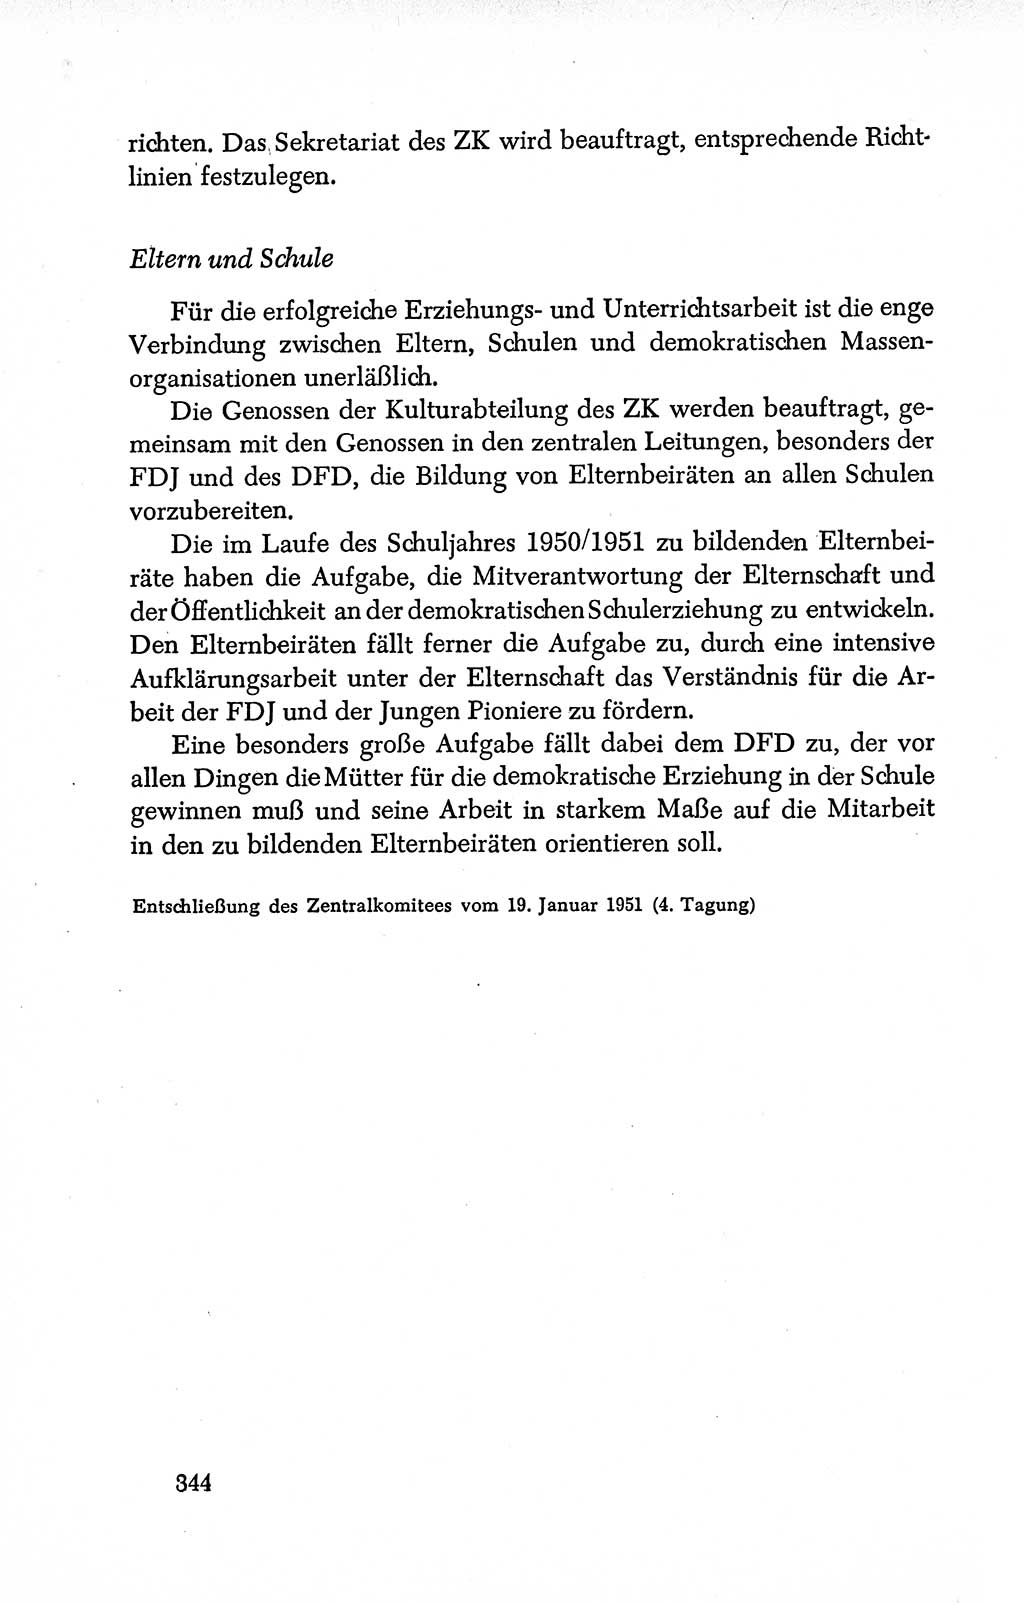 Dokumente der Sozialistischen Einheitspartei Deutschlands (SED) [Deutsche Demokratische Republik (DDR)] 1950-1952, Seite 344 (Dok. SED DDR 1950-1952, S. 344)